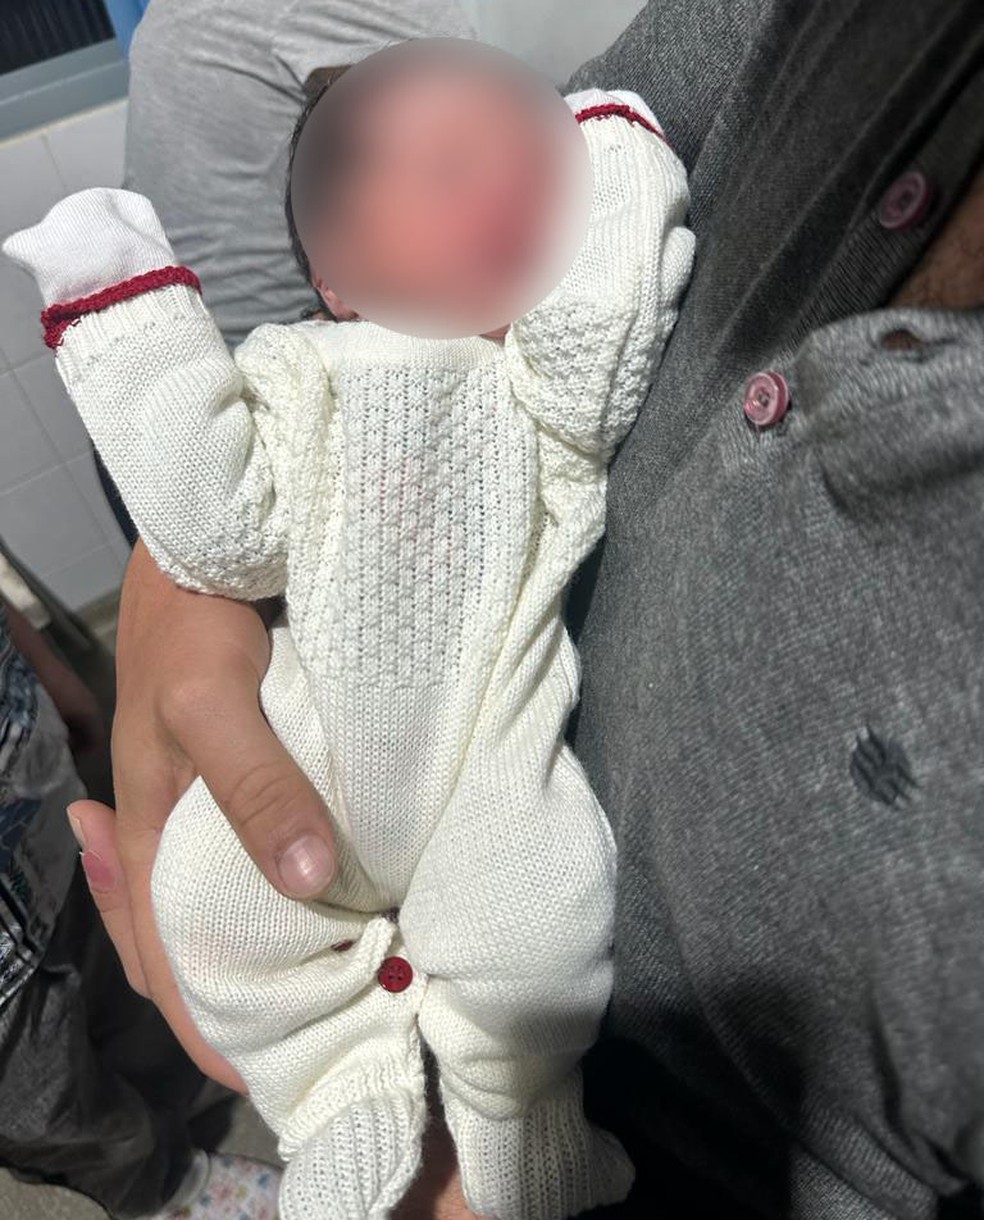 Pai abandona bebê de três meses na estação Brás da CPTM – Metro World News  Brasil